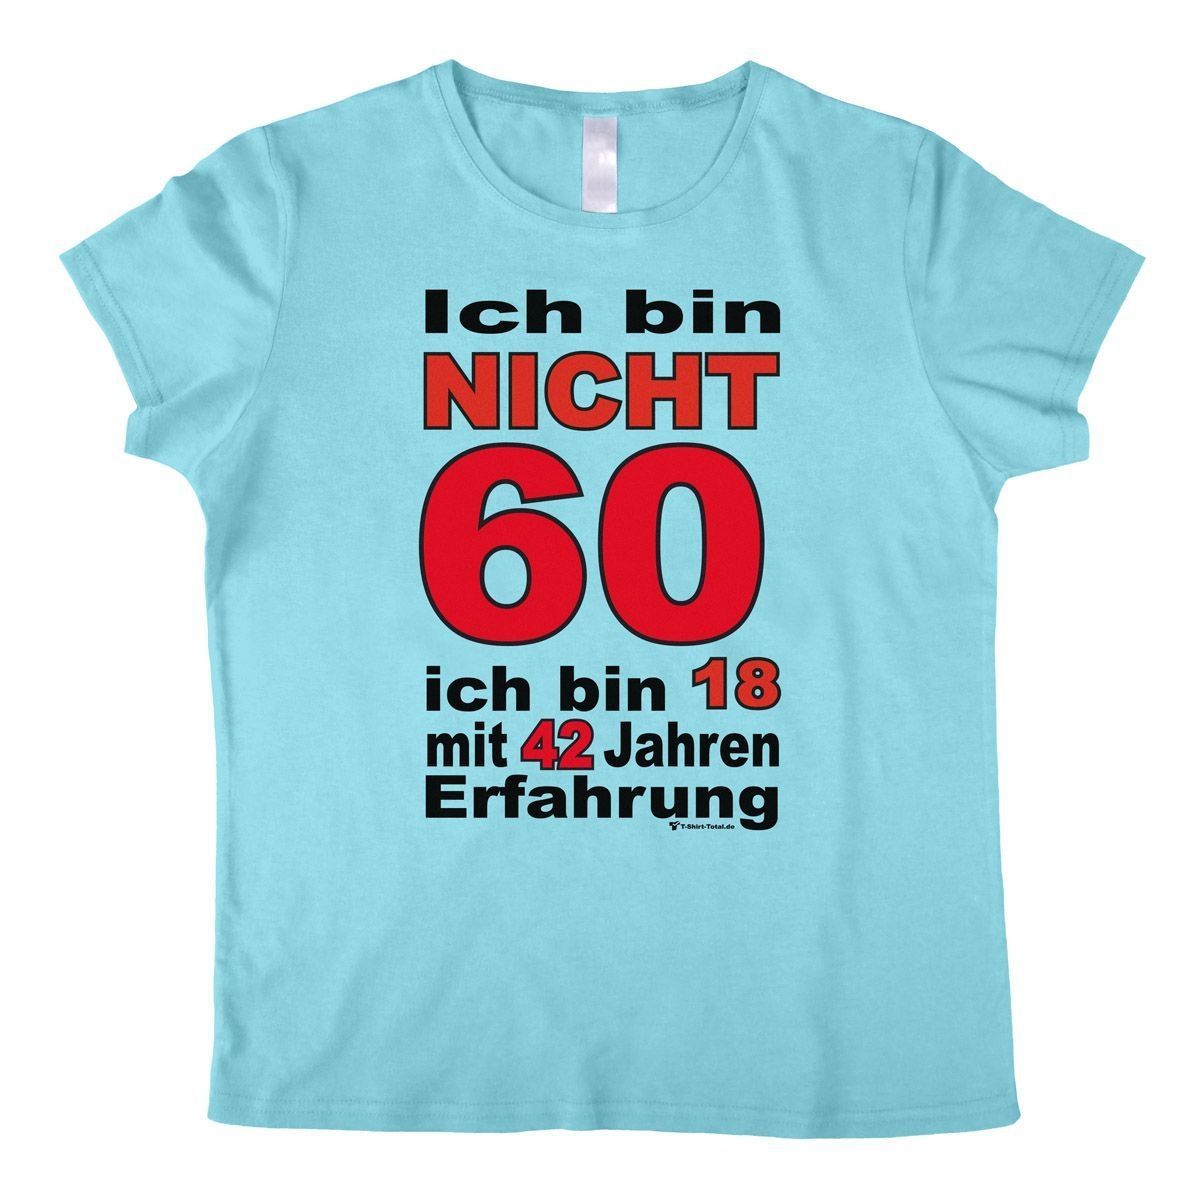 Bin nicht 60 Woman T-Shirt hellblau Small